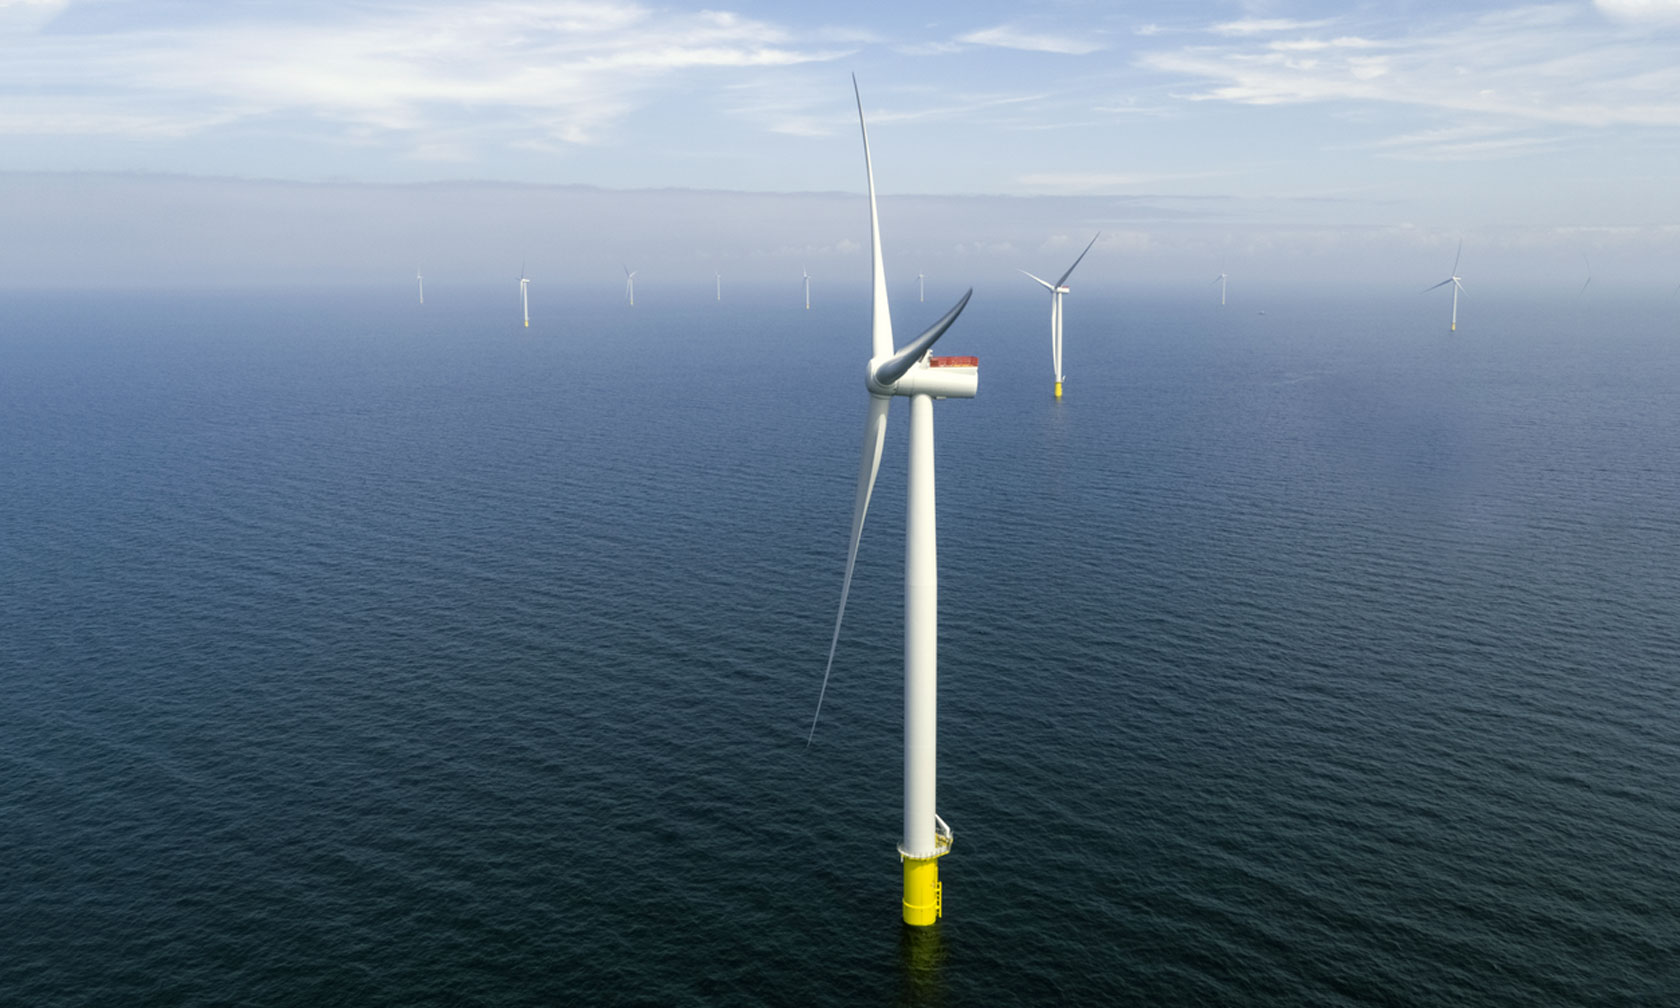 Kriegers Flak offshore wind farm